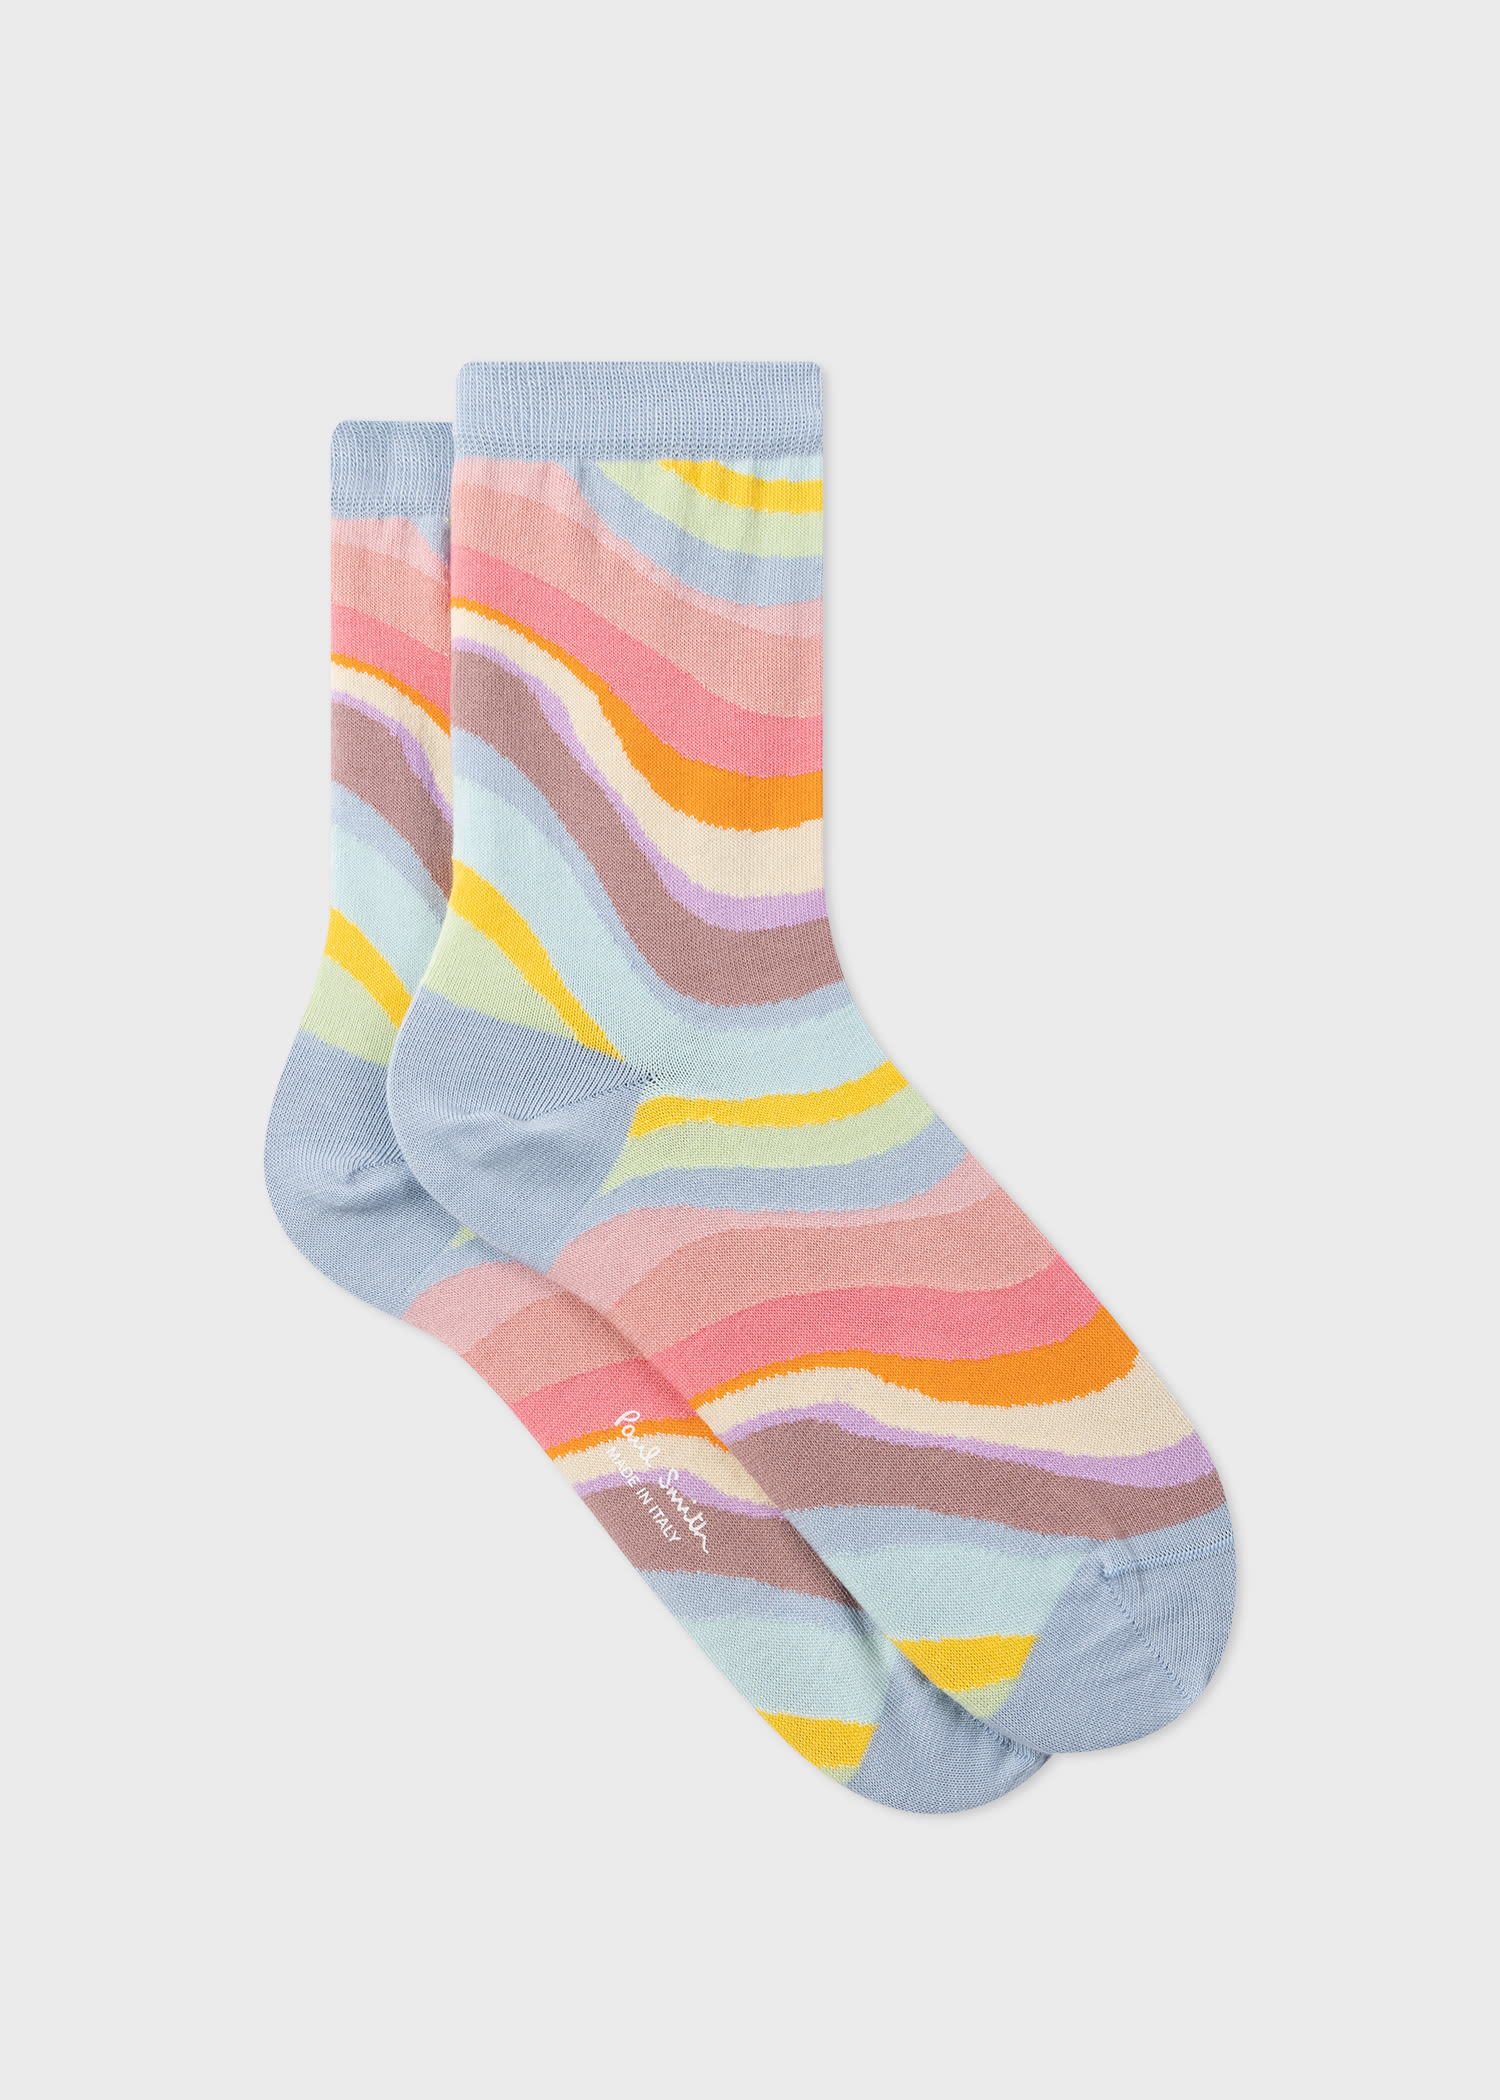 Women's 'Spray Swirl' Socks